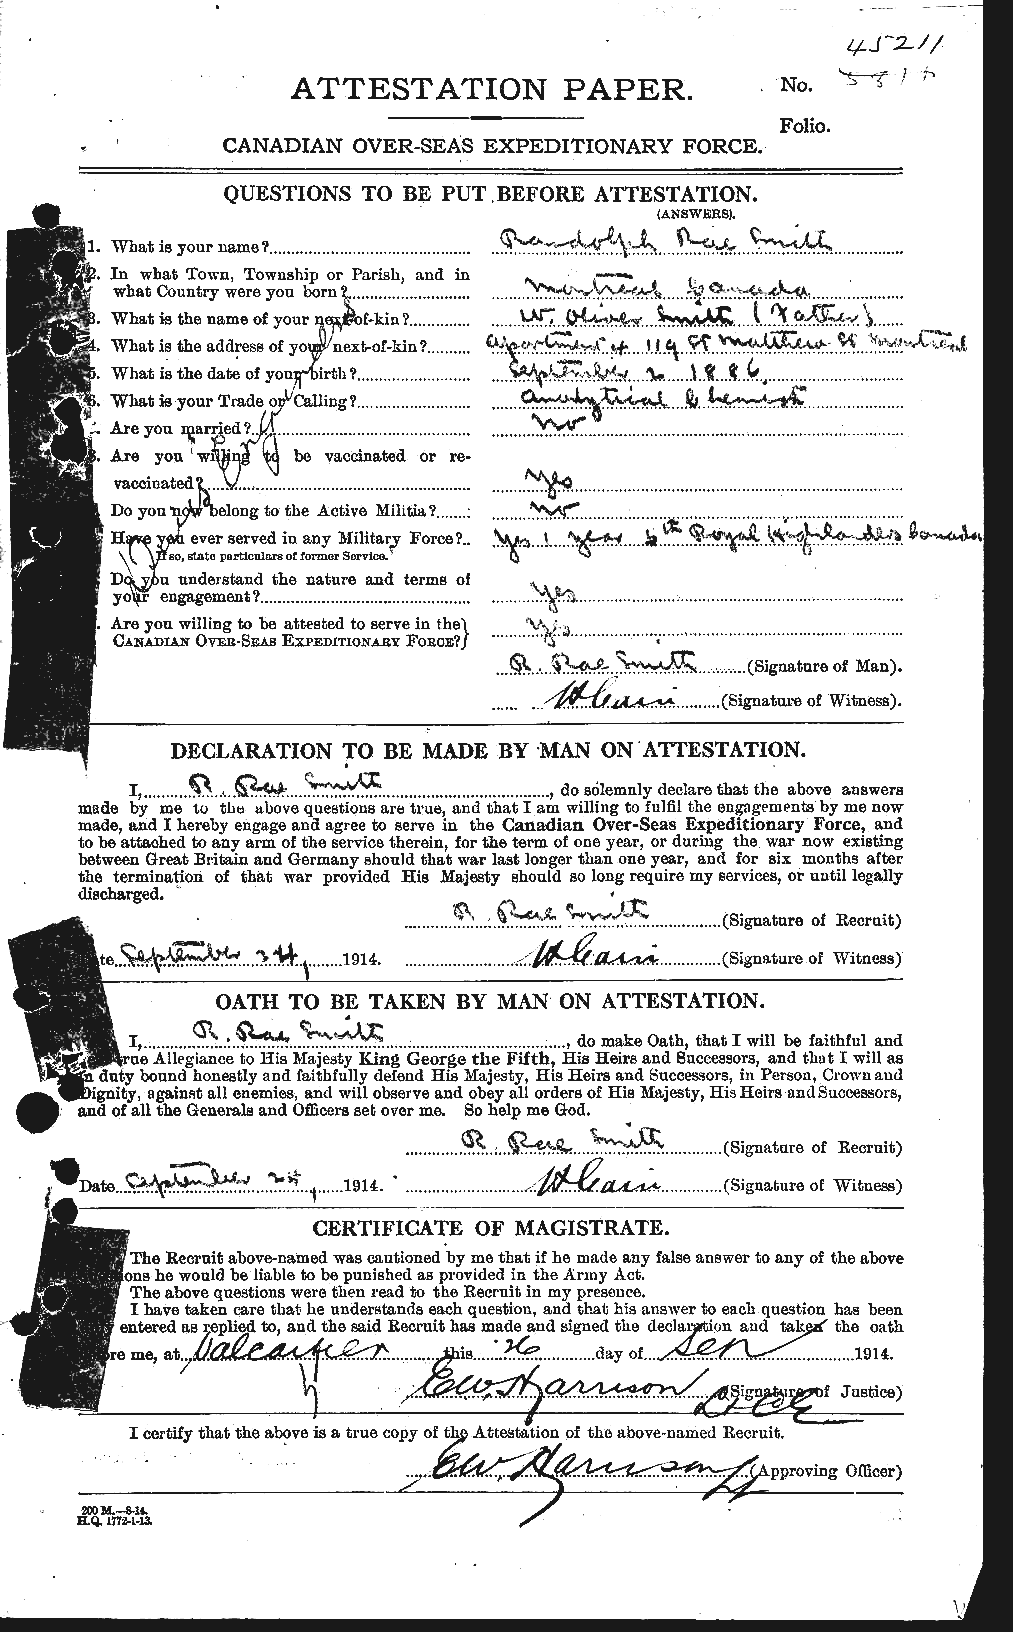 Dossiers du Personnel de la Première Guerre mondiale - CEC 622239a